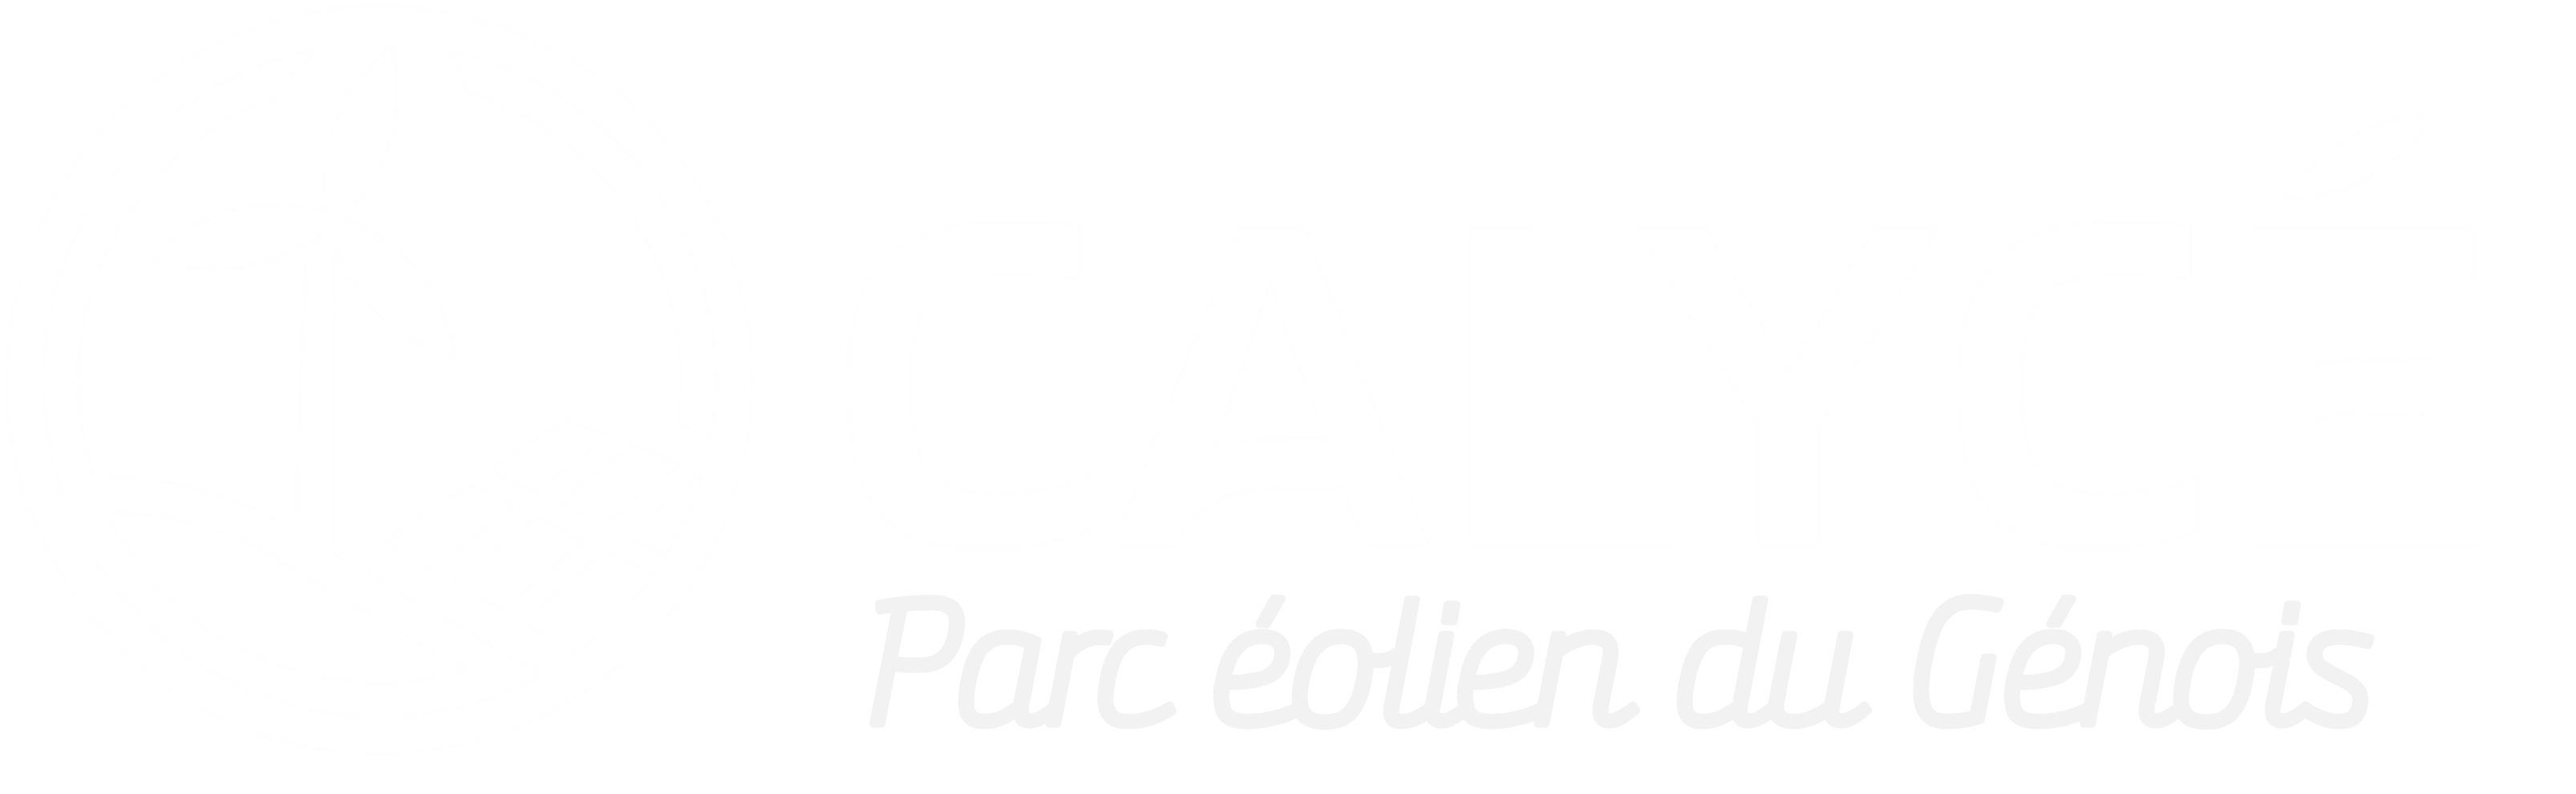 PARC ÉOLIEN DU GÉNOIS Logo